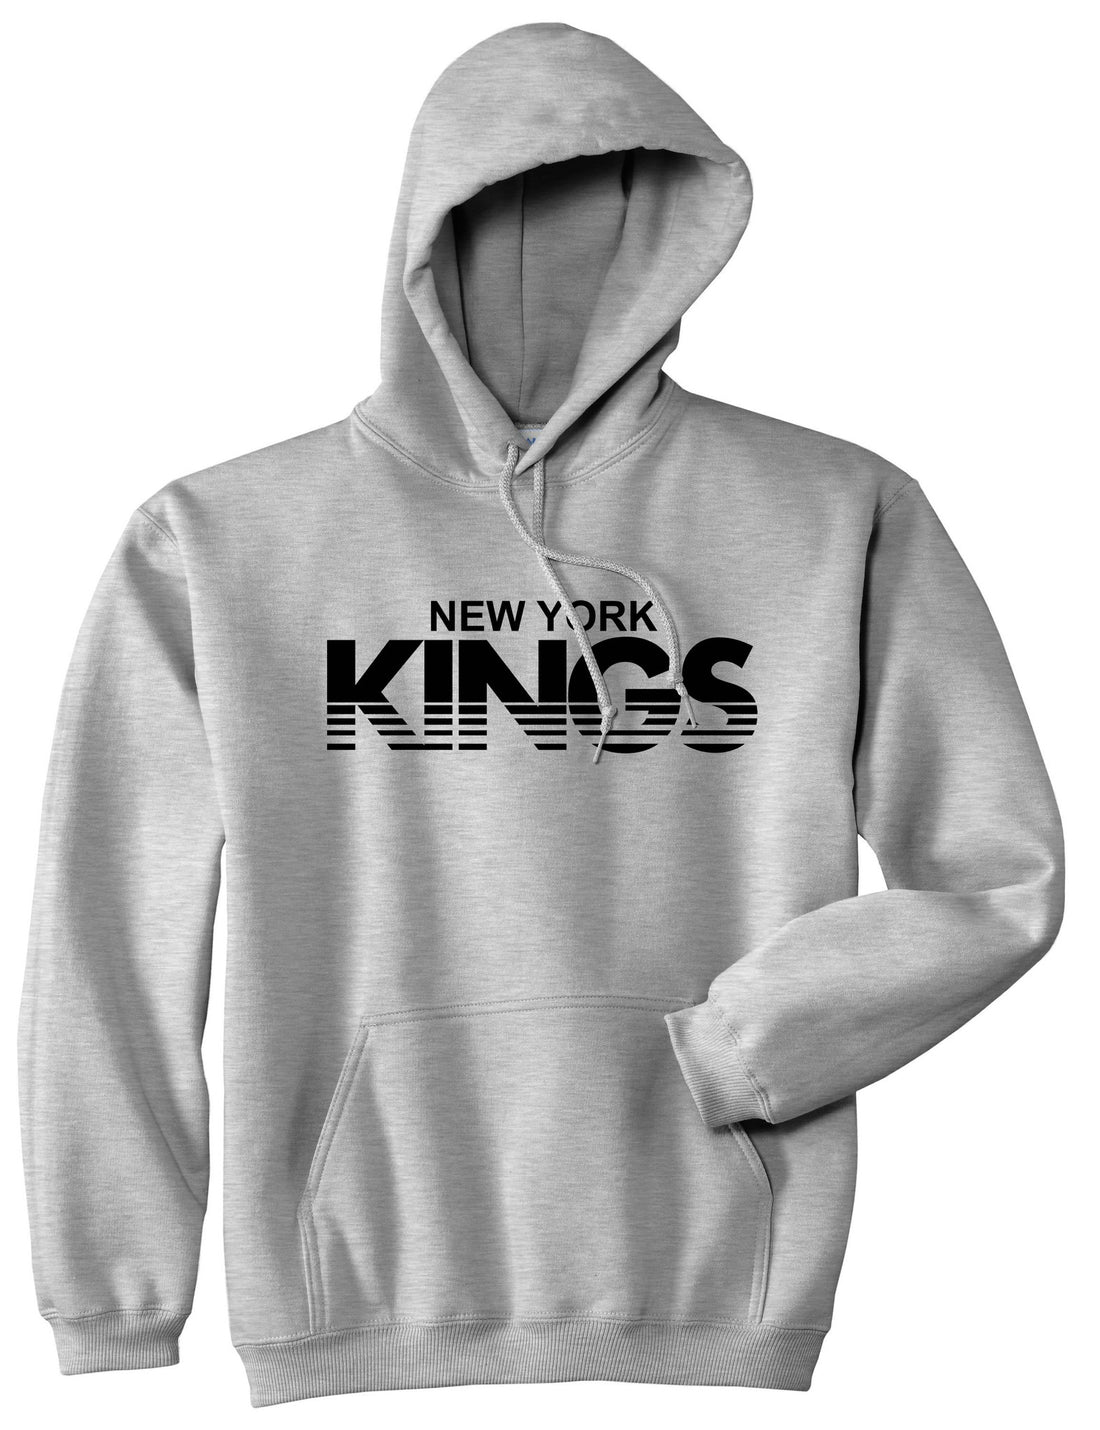 New York Kings Racing Style Pullover Hoodie Hoody in Grey by Kings Of NY